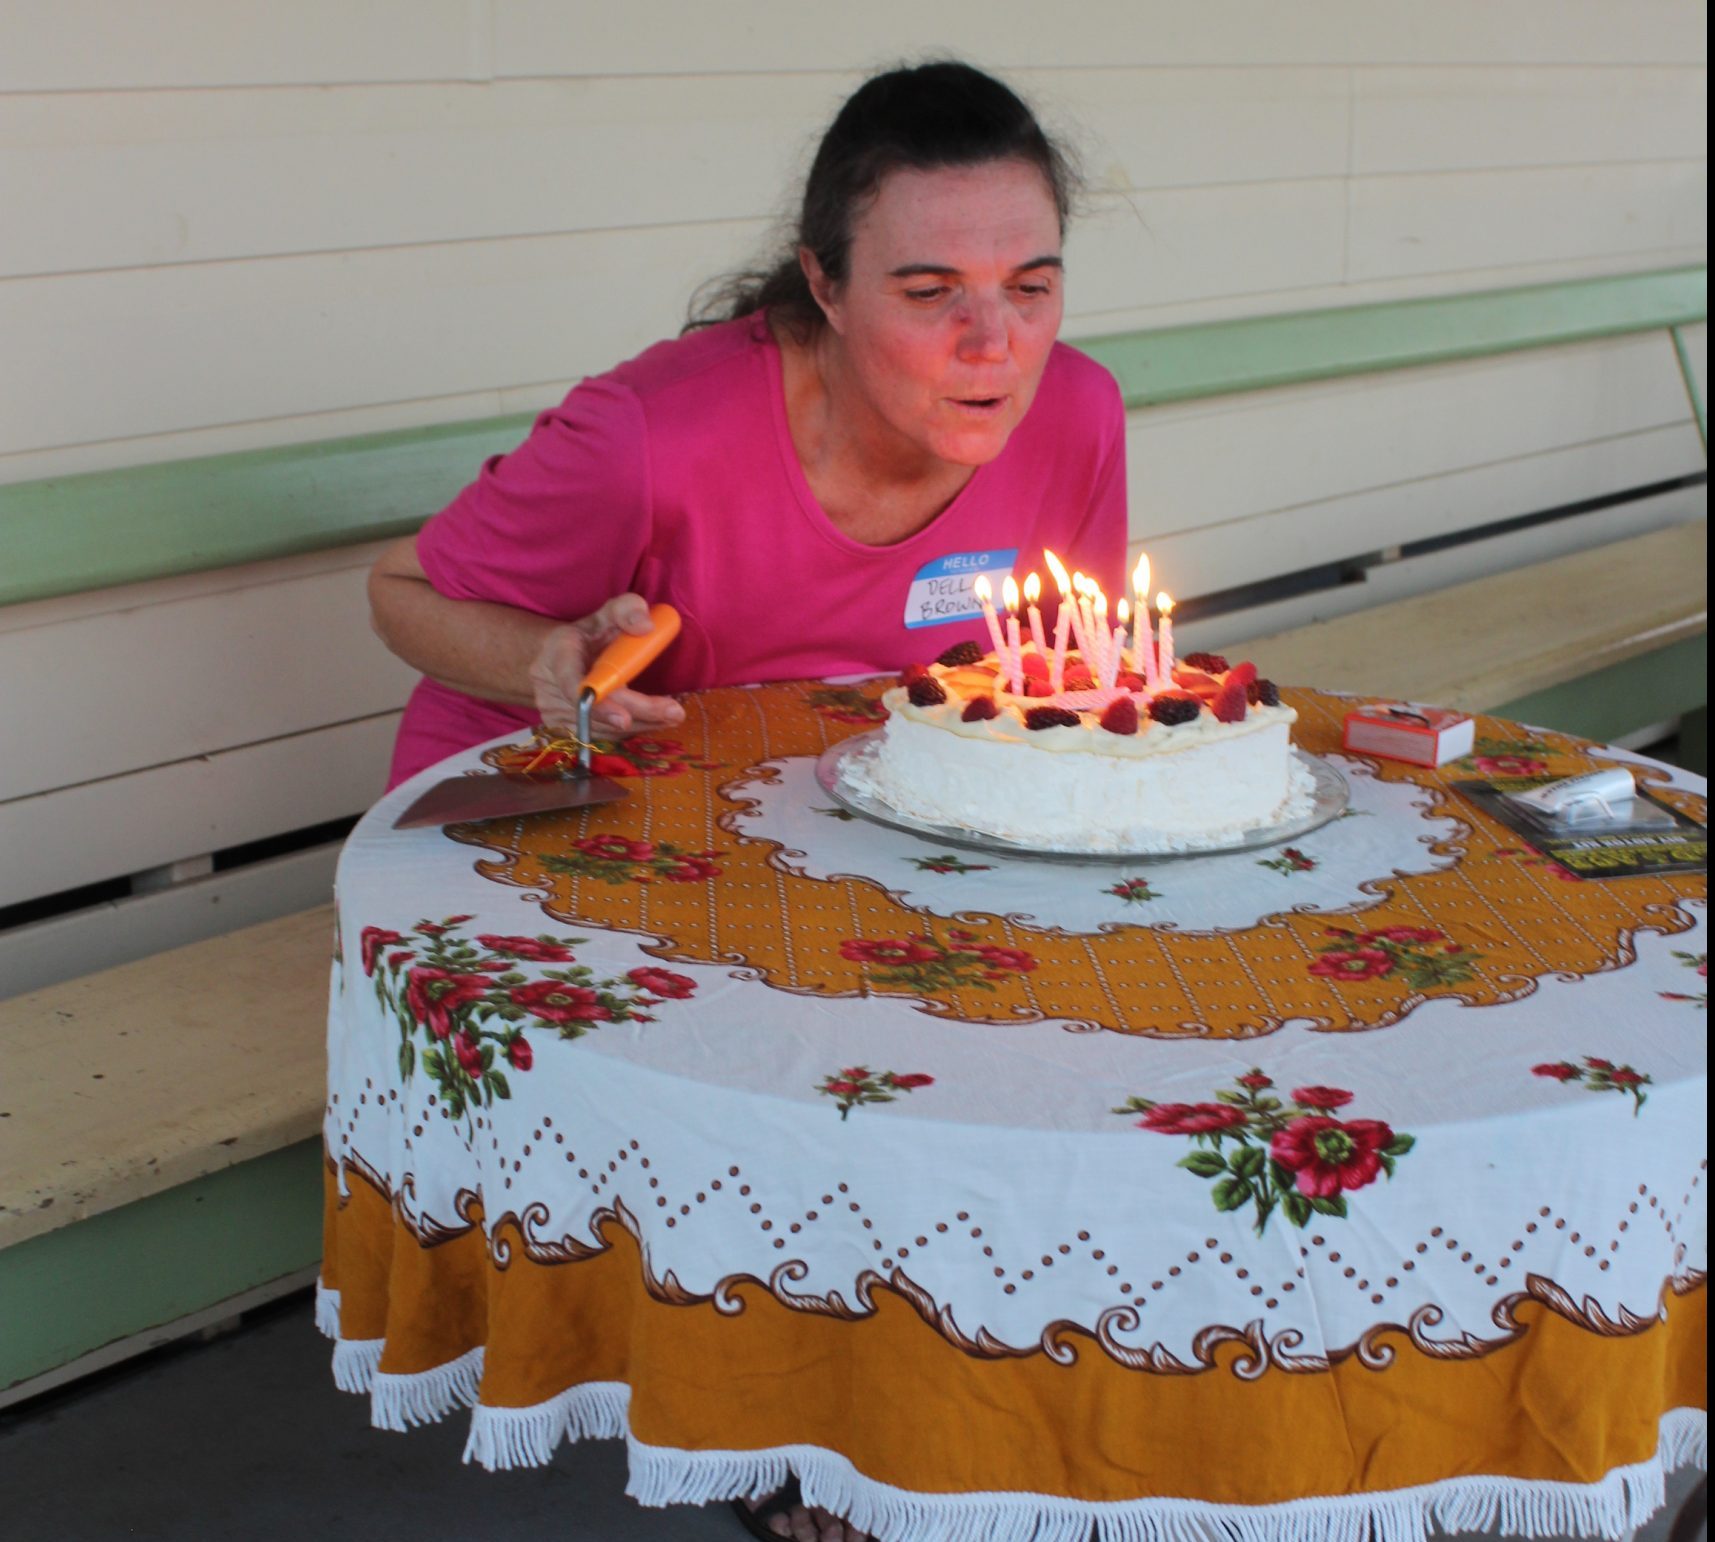 Della celebrates 50th birthday